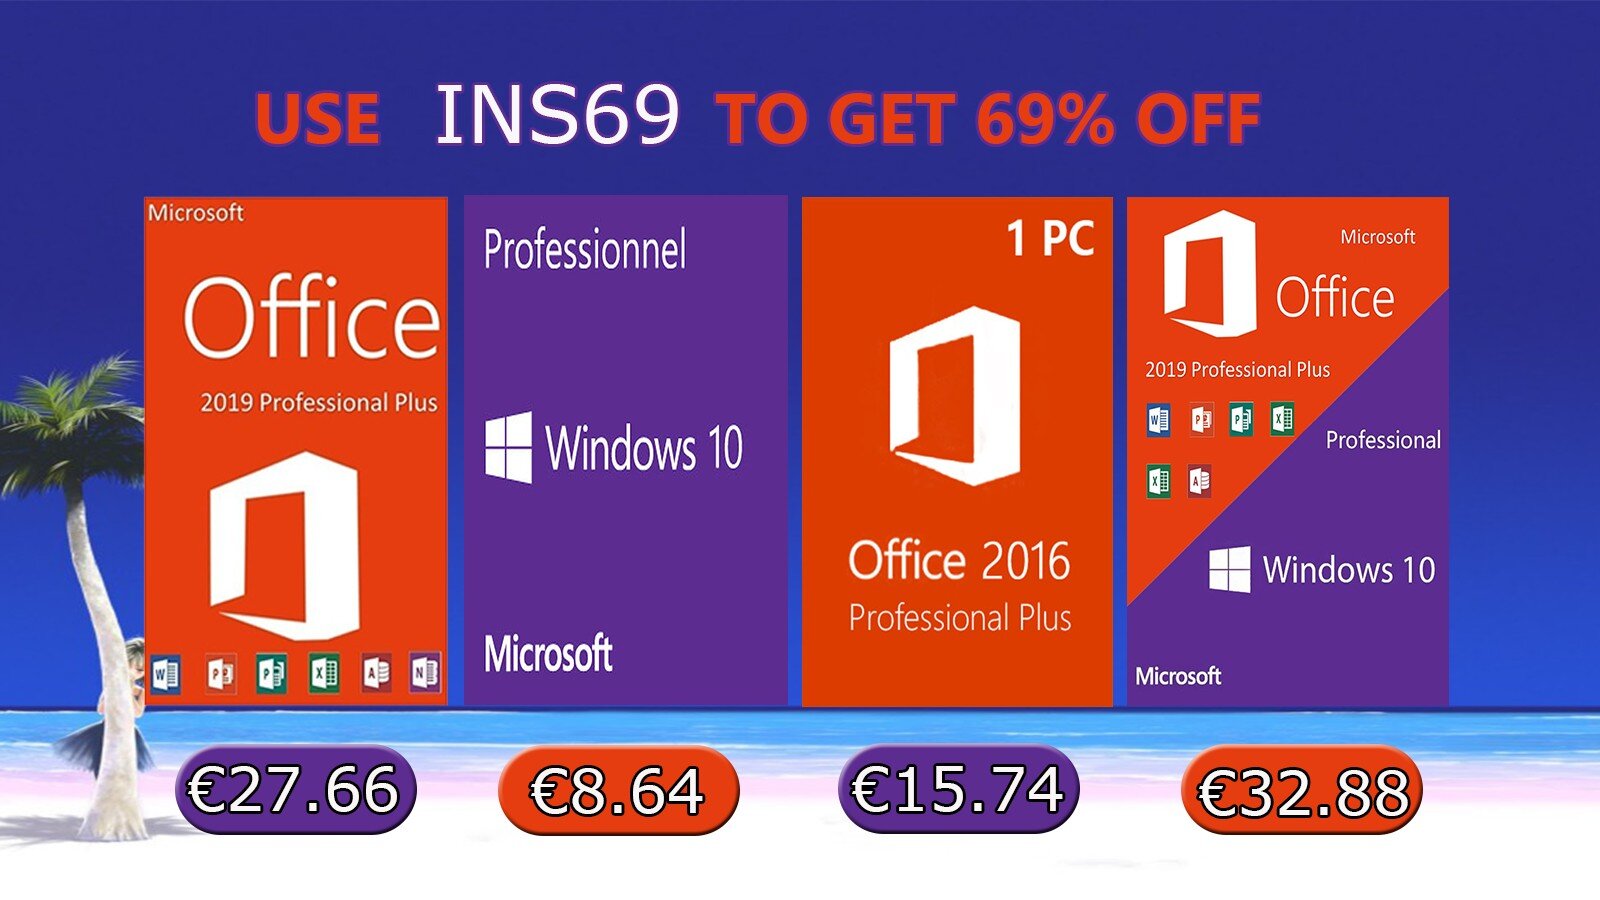 Software Deals: Windows 10 pro key @ €8.64, Office 2019 Pro @ €27.66